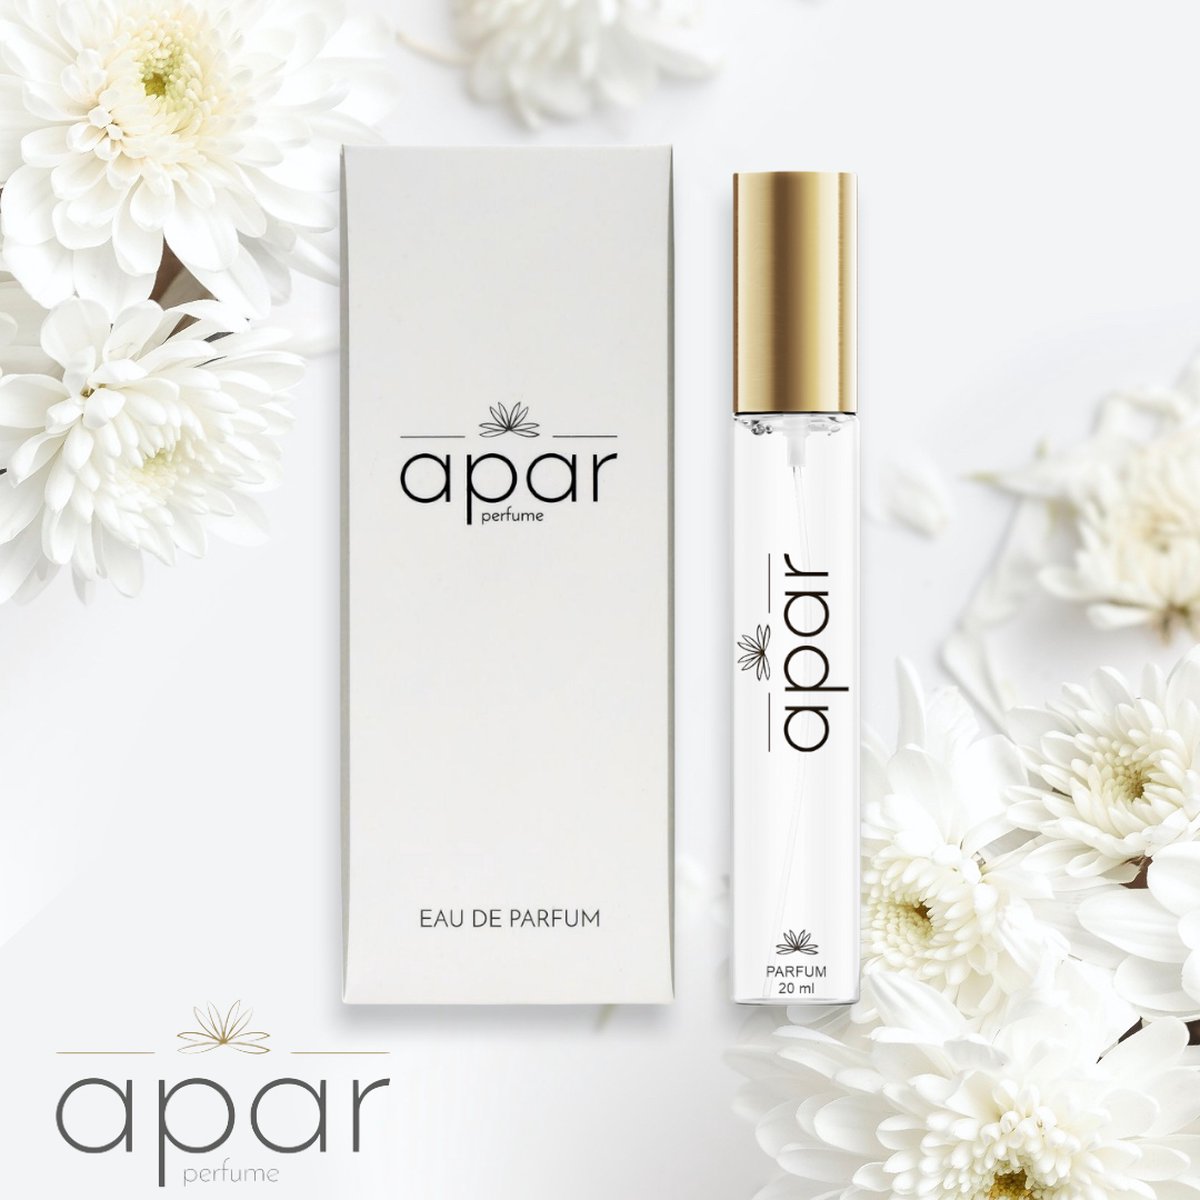 ❤Dure merk geuren voor een eerlijke prijs❤APAR Parfum EDP - 20ml - Nummer F211 Standard -